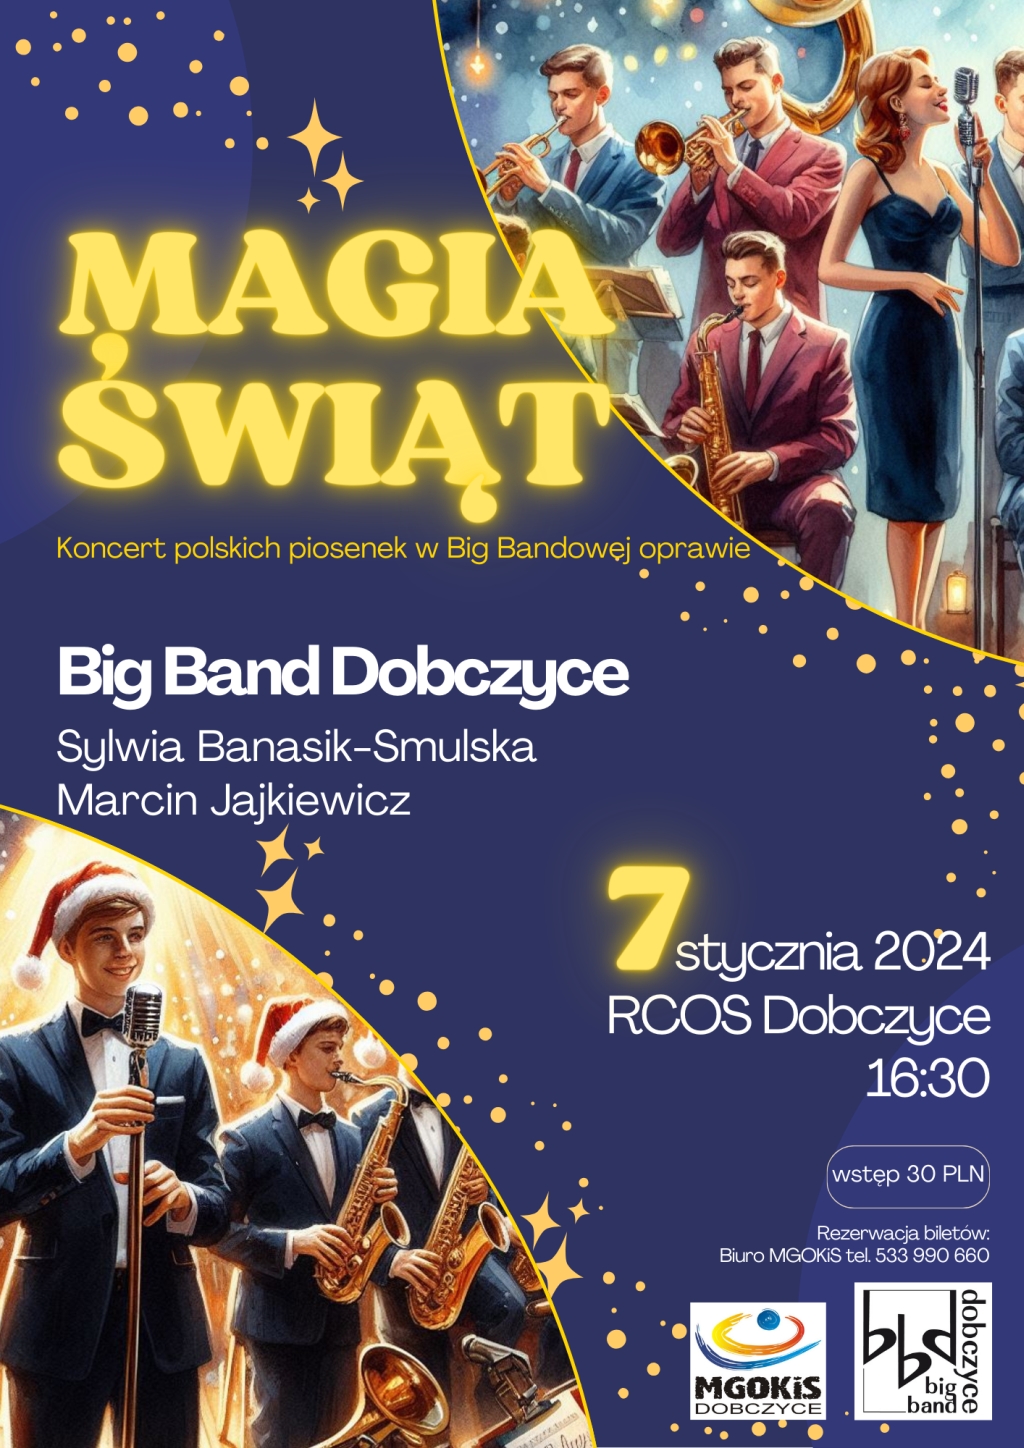 Magia Świąt – zaproszenie na koncert Big Bandu Dobczyce